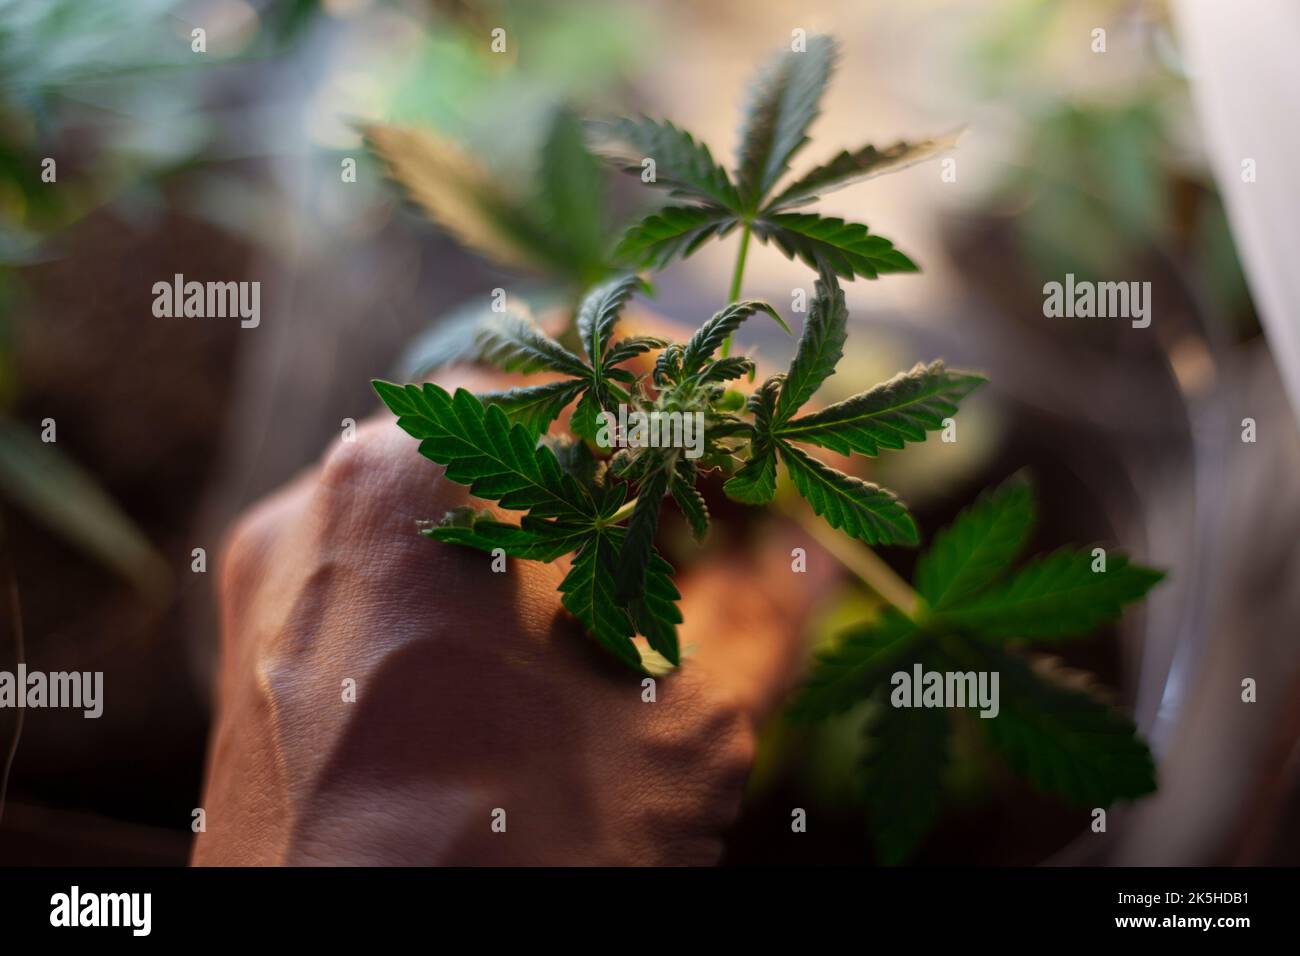 Marihuana wächst im Topf. Hanfpflanze ist grün. Die Hand hält den Stamm des Grasbüschens. Betäubungsmittel. Drogen sind illegal und gesundheitsschädlich. Untersagtes Substa Stockfoto